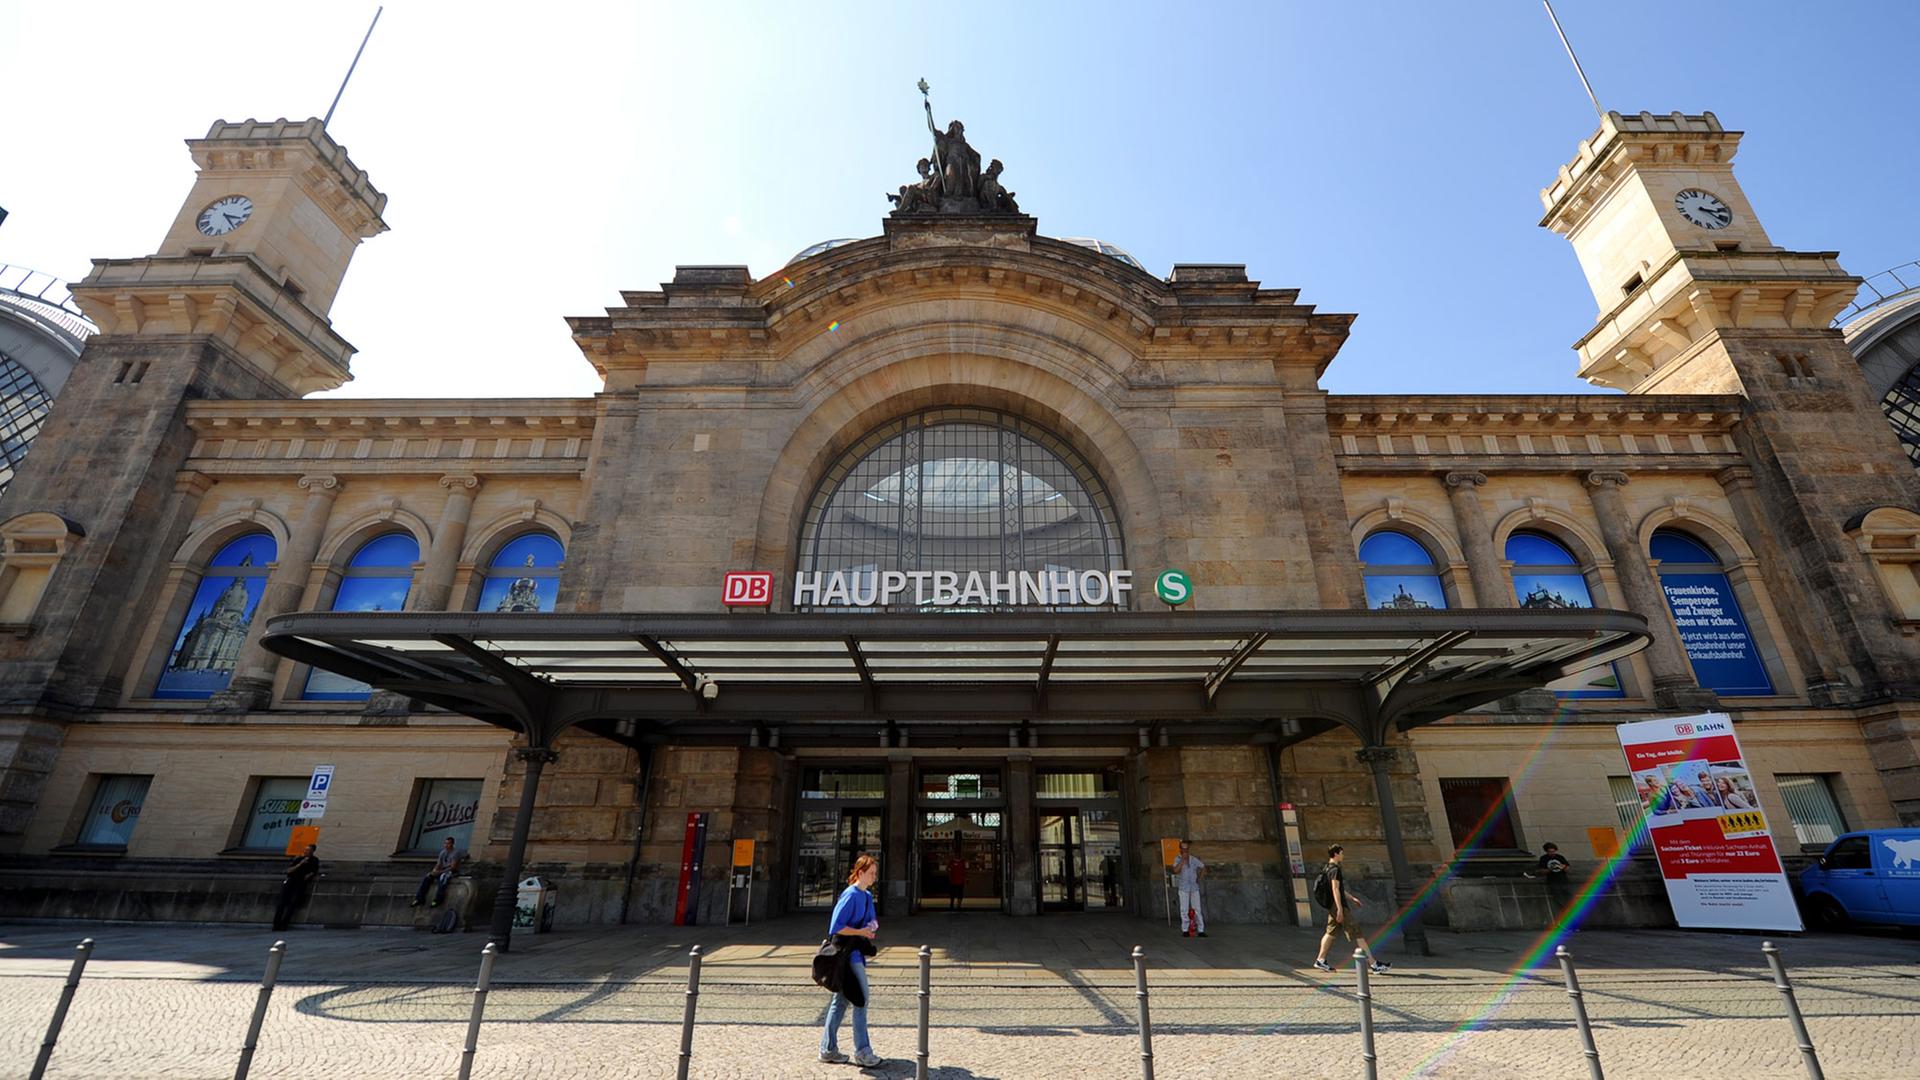 Der Hauptbahnhof in Dresden ist mit dem Titel "Bahnhof des Jahres 2014" ausgezeichnet worden.